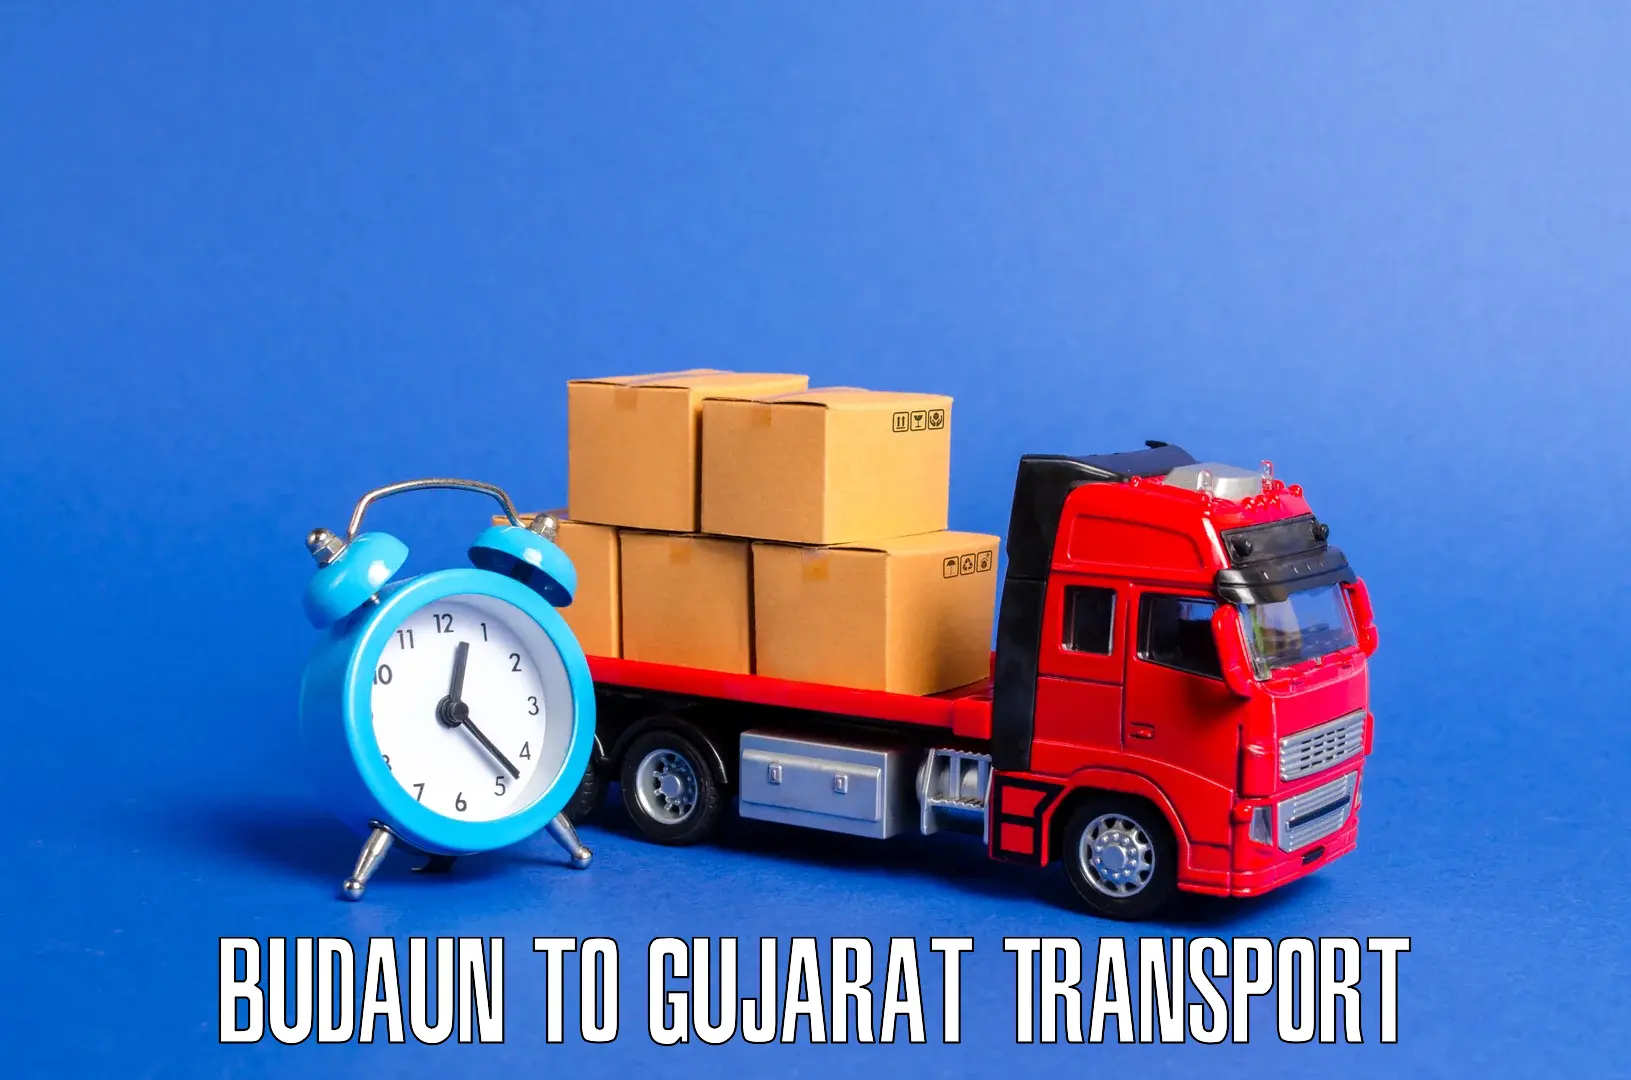 Pick up transport service Budaun to Patdi